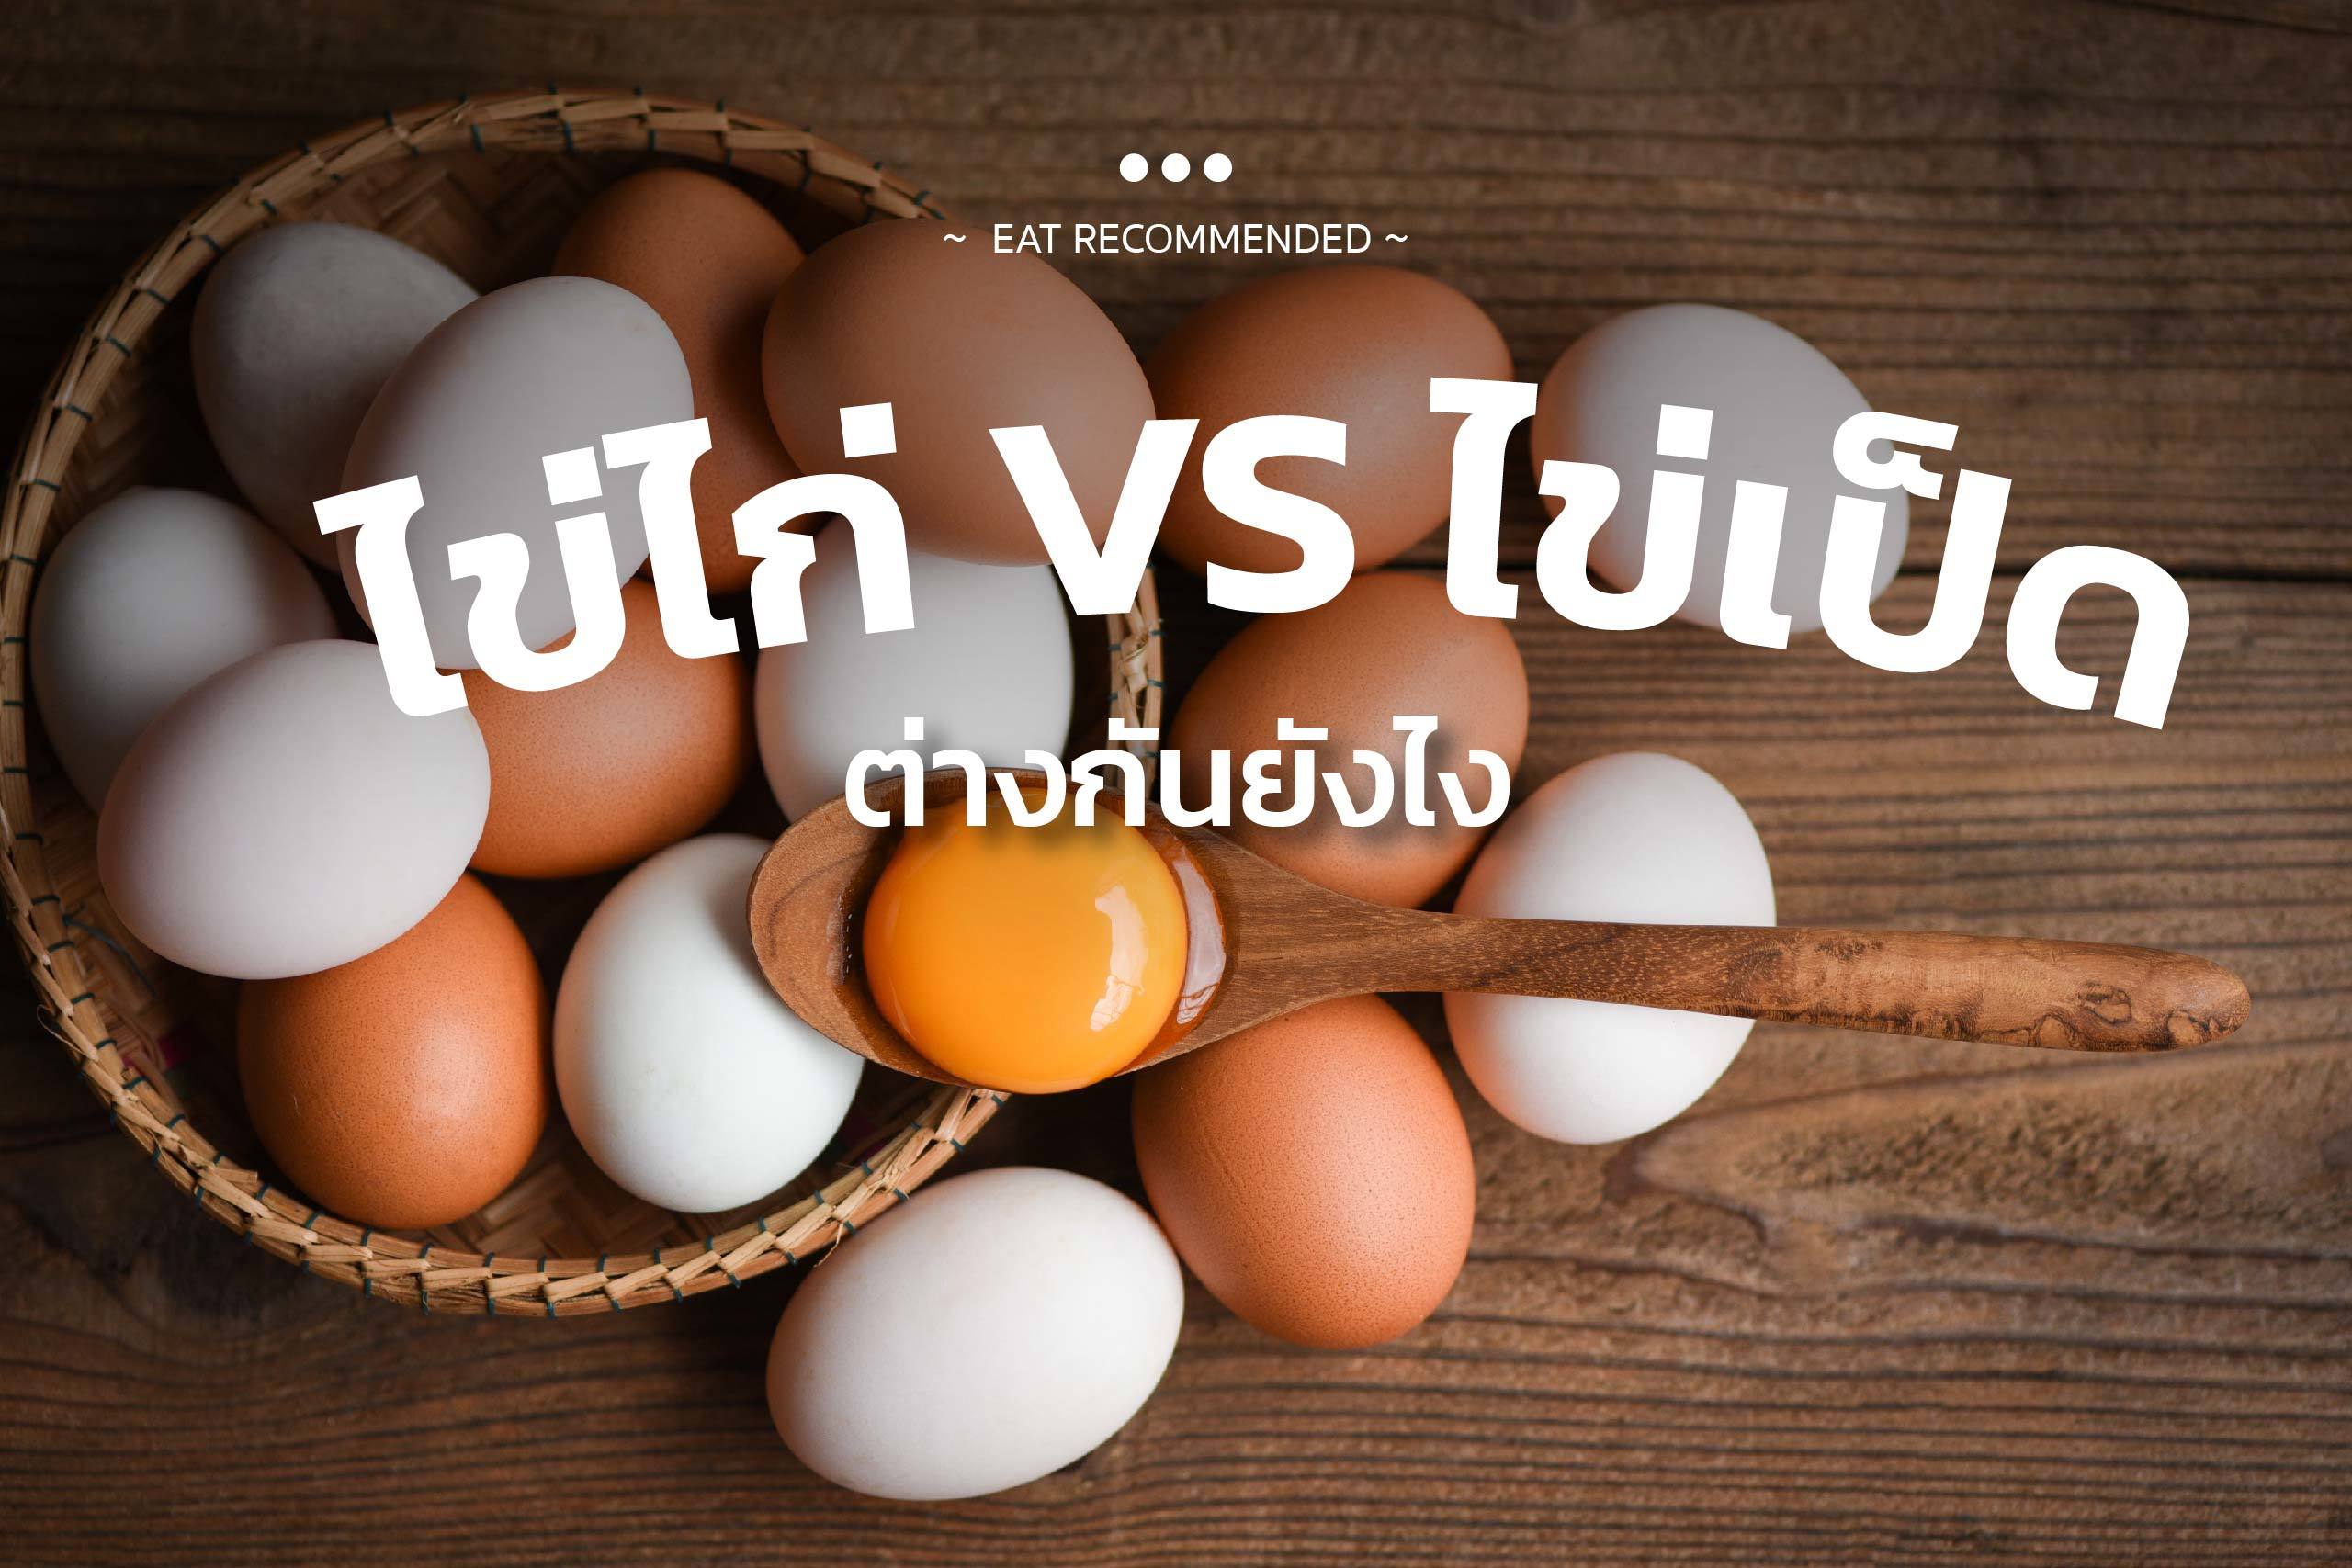 เทียบชัด ไข่ไก่ VS ไข่เป็ด ต่างกันยังไง?